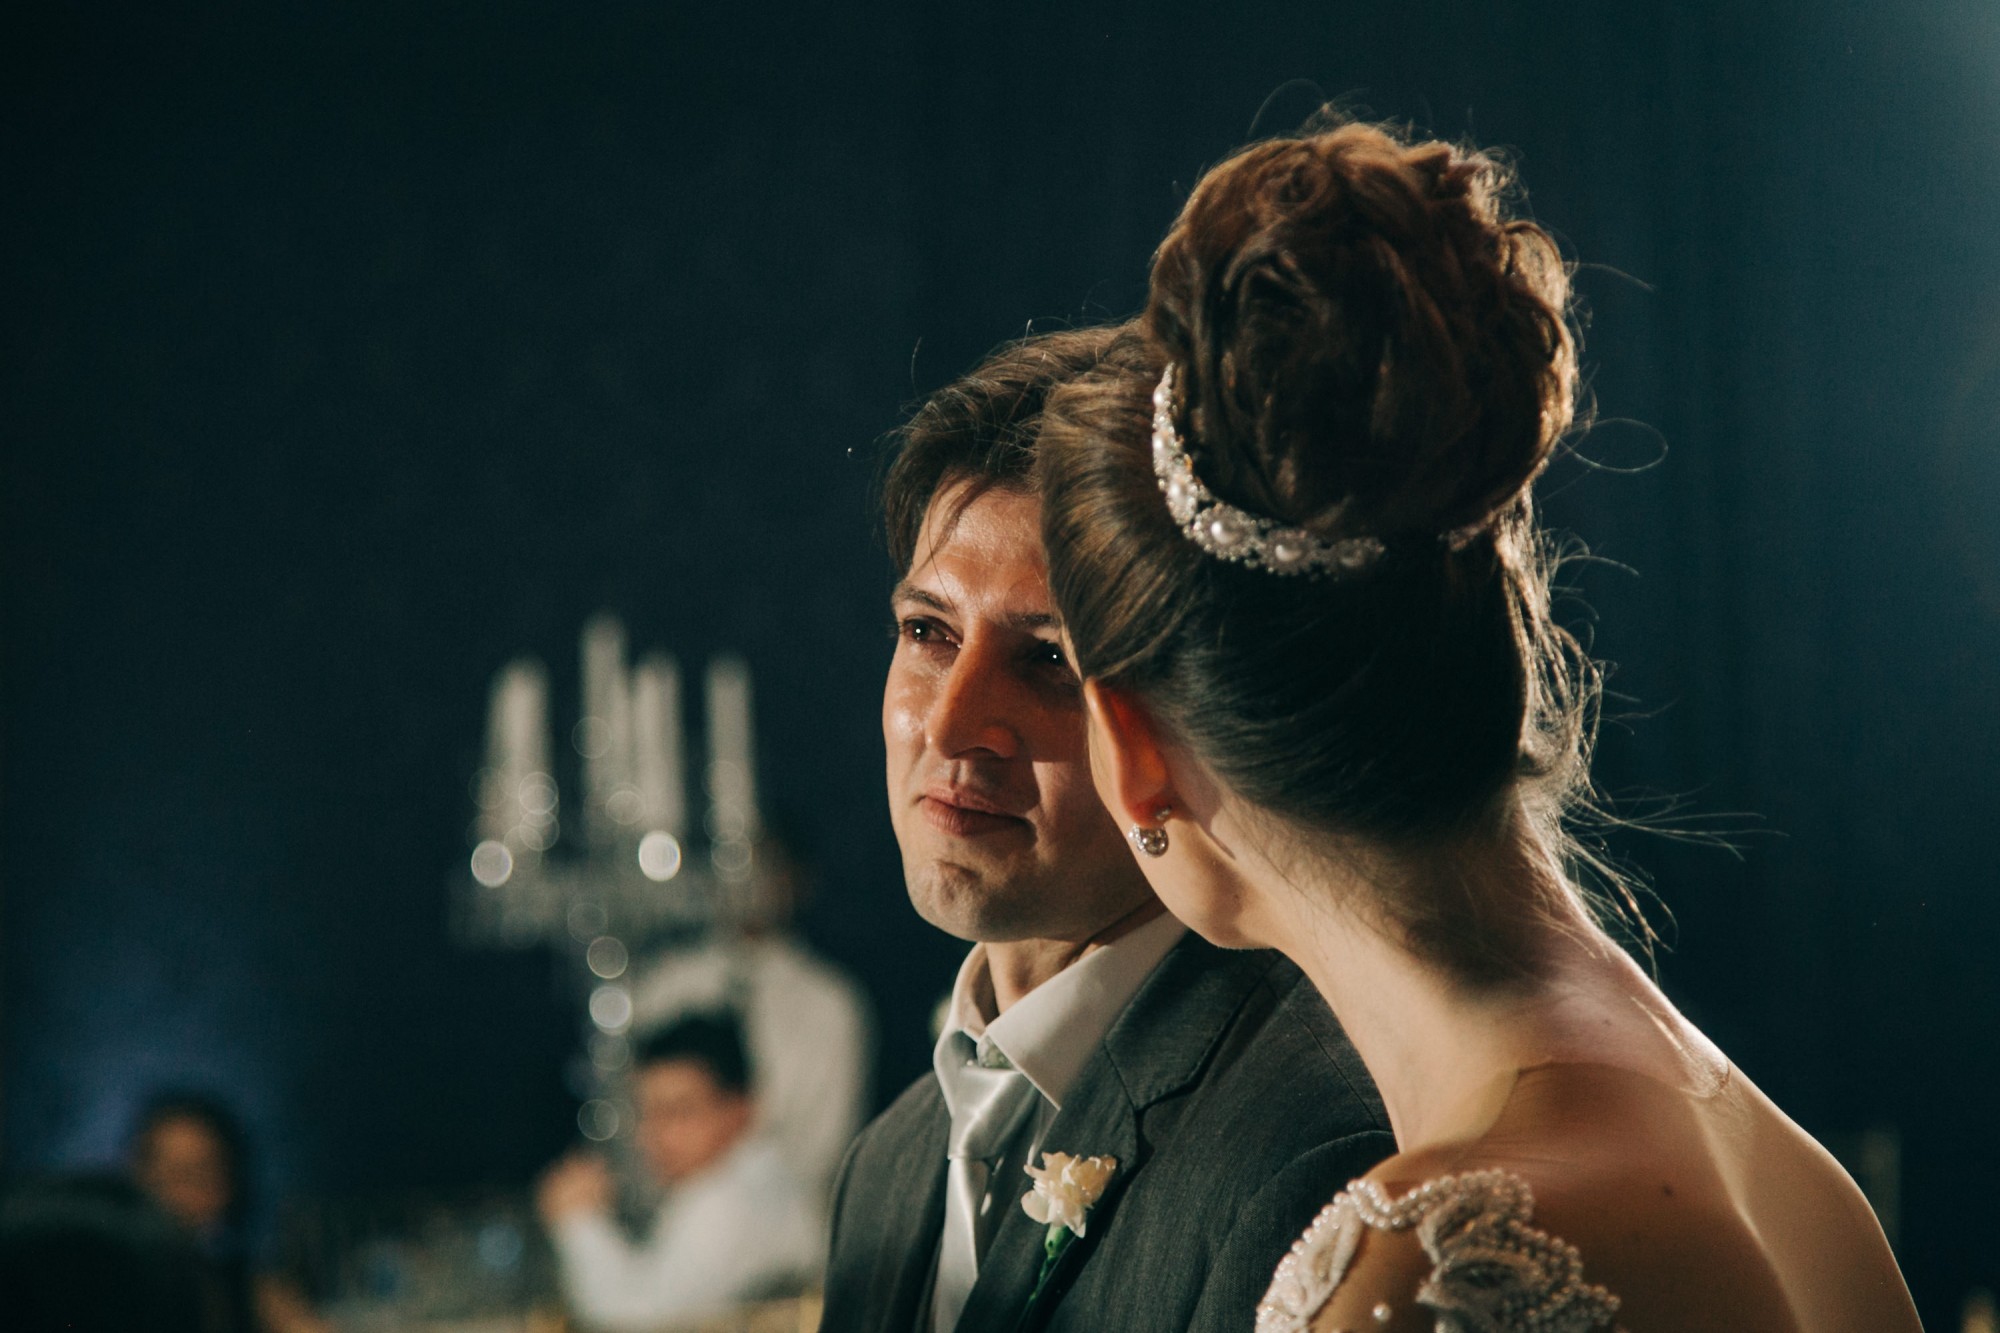 Casamento Anderson e Juliana Fioreli em Iporã Paraná - por Lorran Souza e Léia Sotile - Fotografos de casamentos - JA-3347